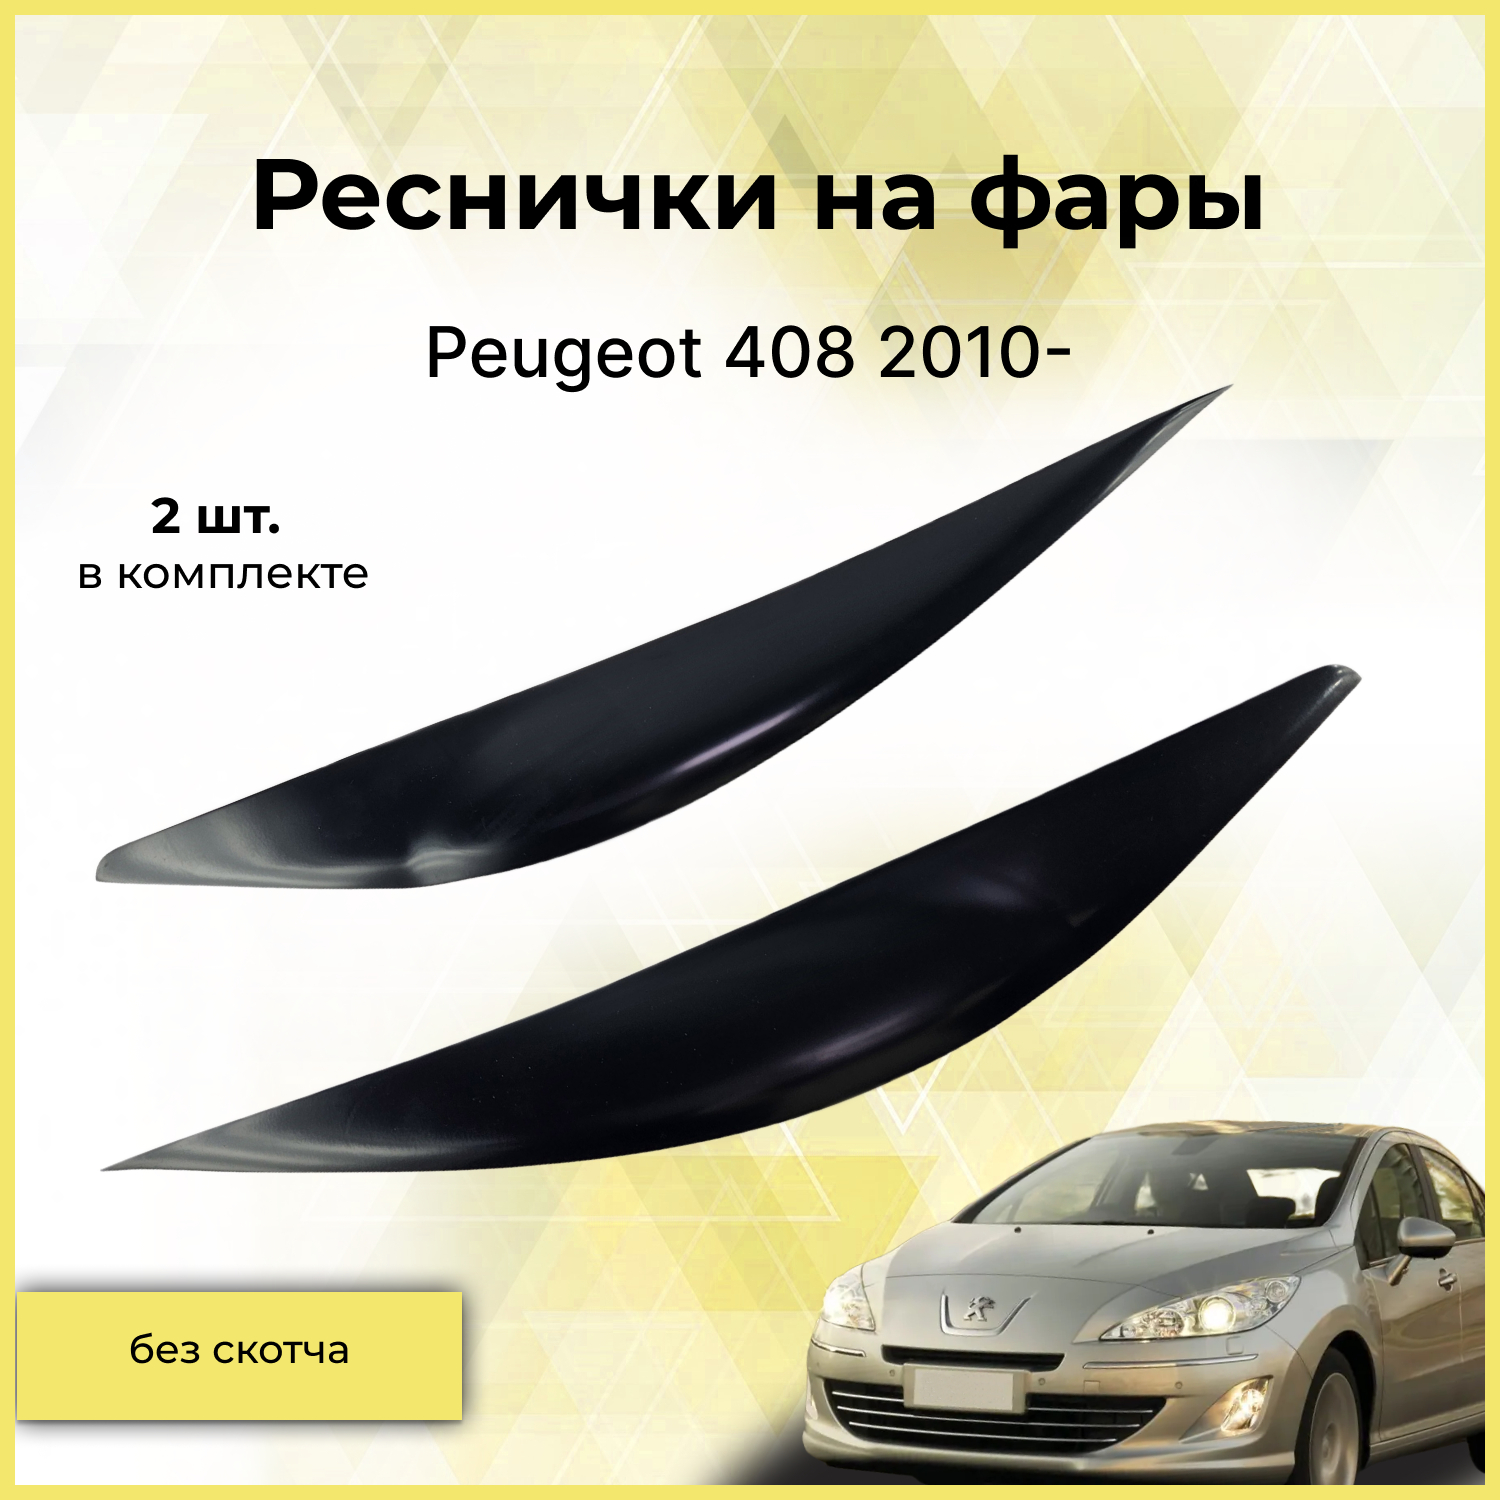 Реснички на фары / Накладки на передние фары для Peugeot 408 (Пежо) 2010-